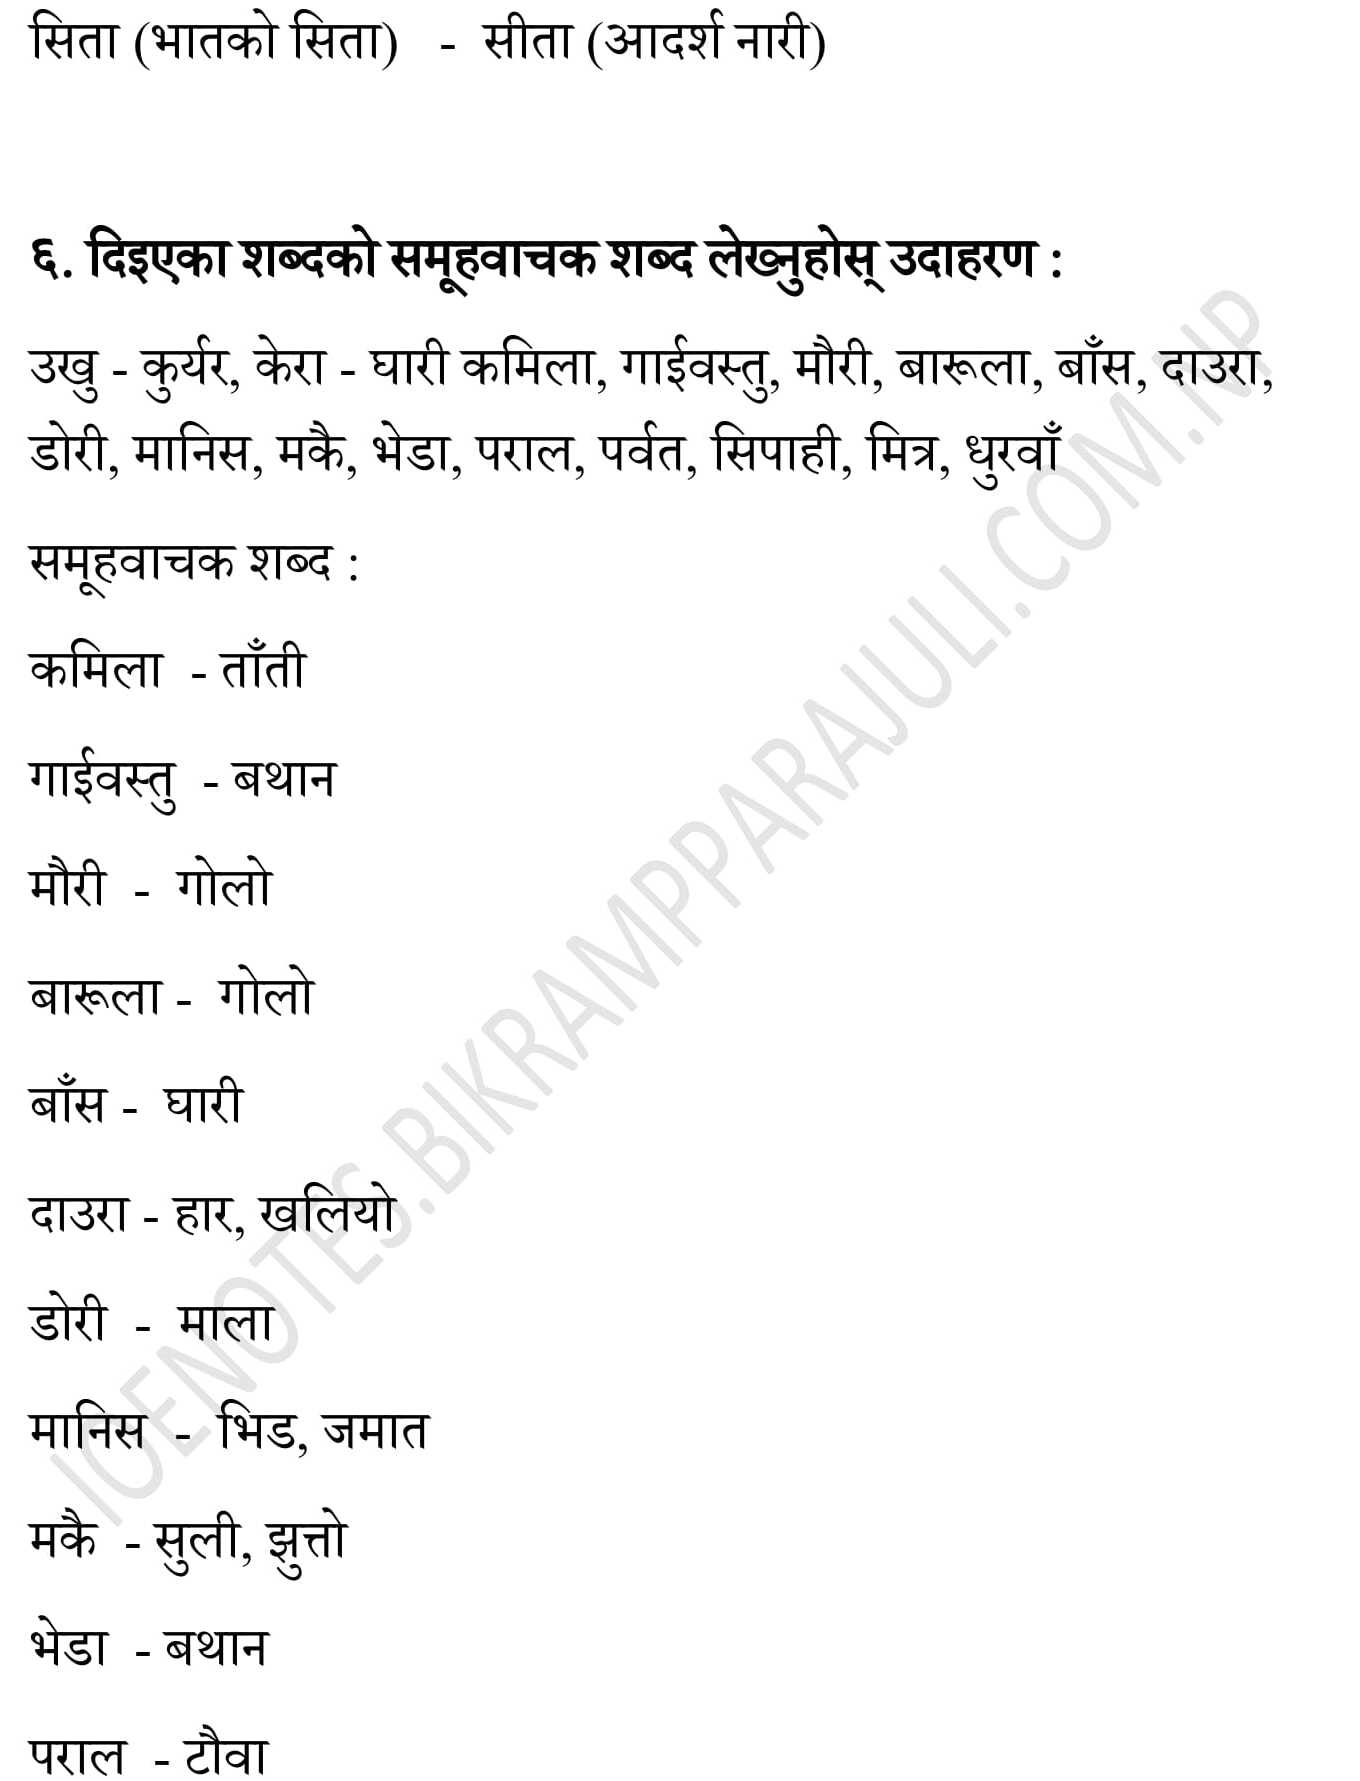 ek chihan summary in nepali